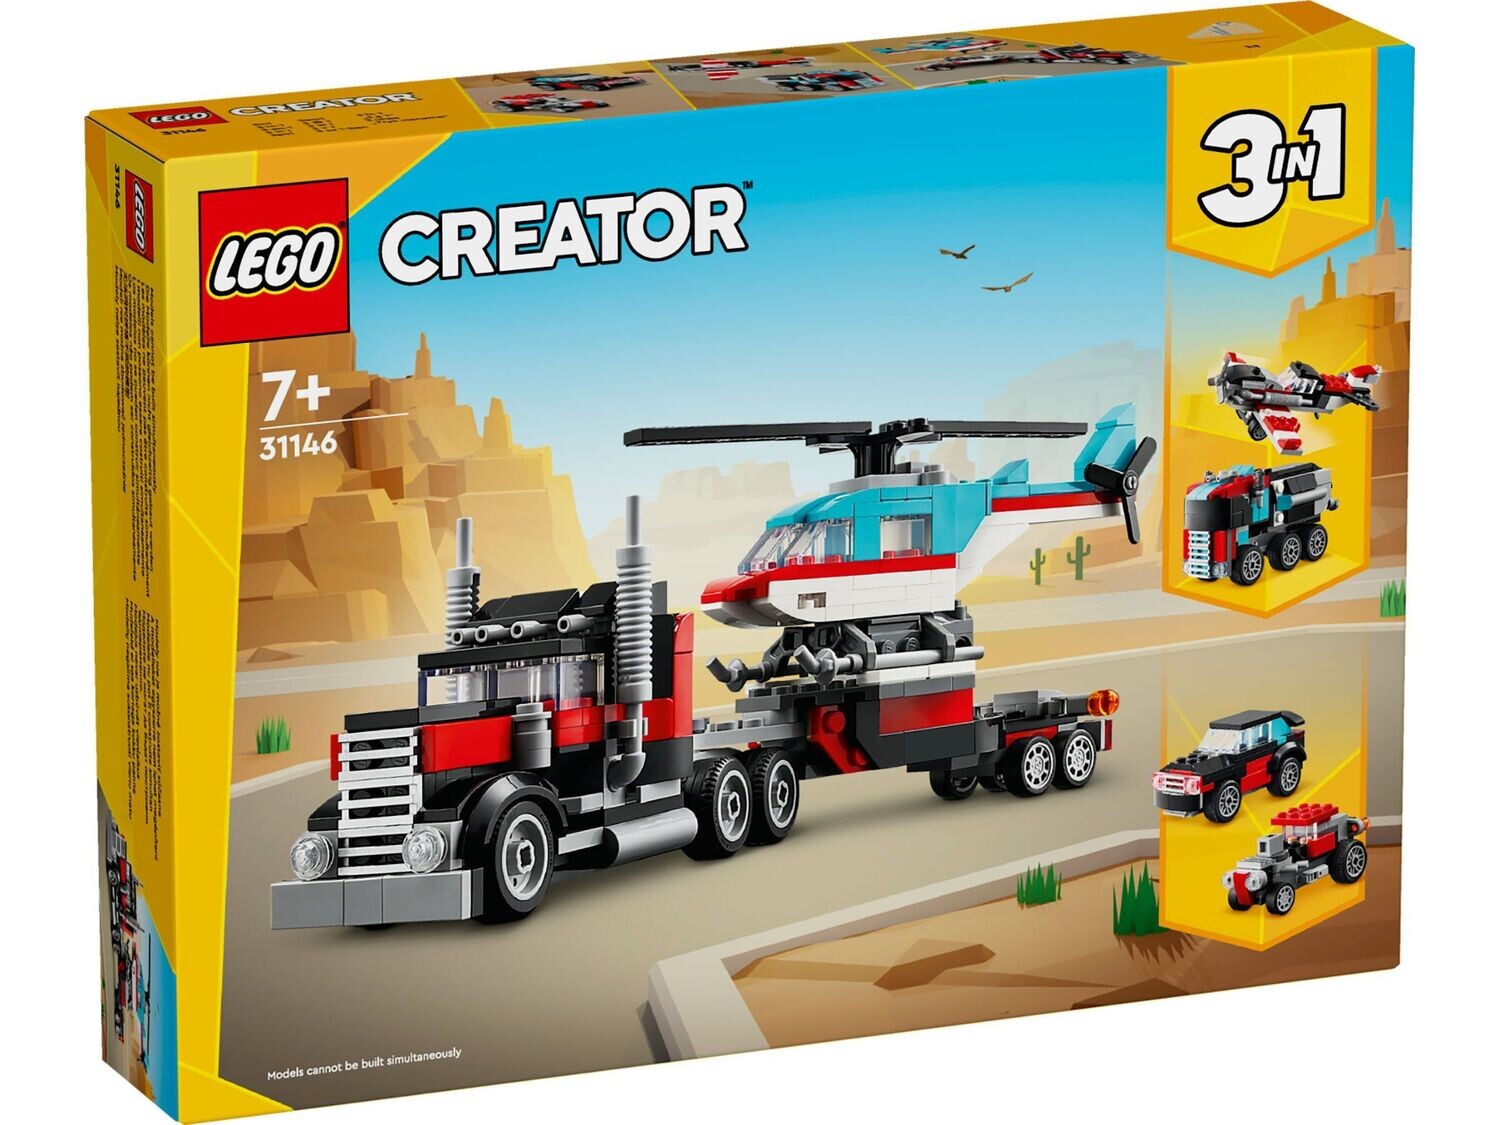 LEGO Creator 3-in-1 31146 - Truck met helikopter